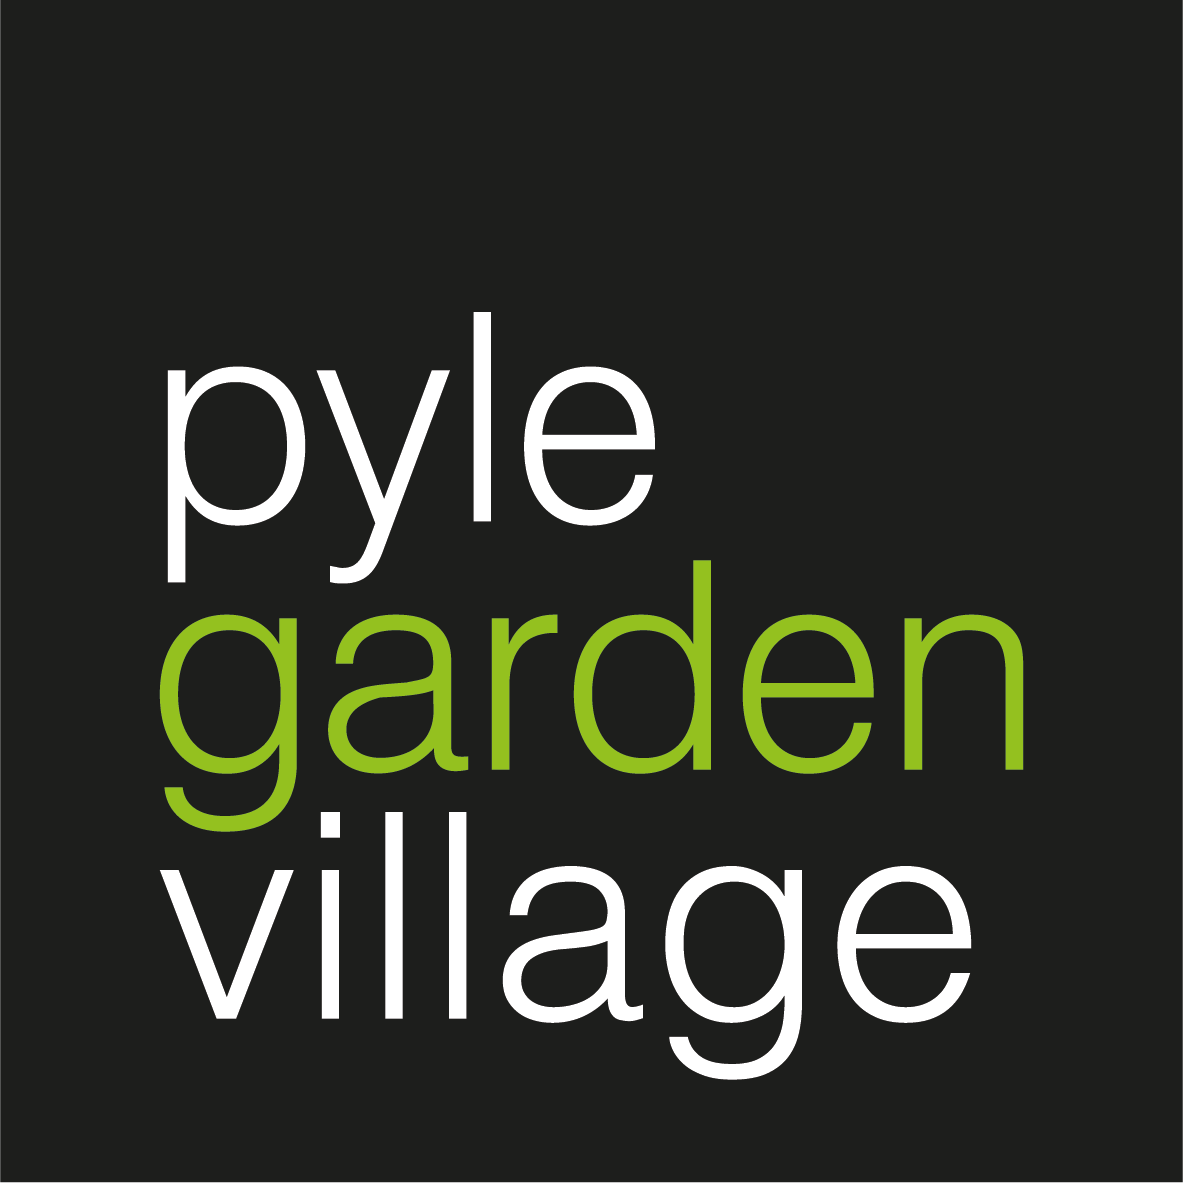 Pyle Garden Village